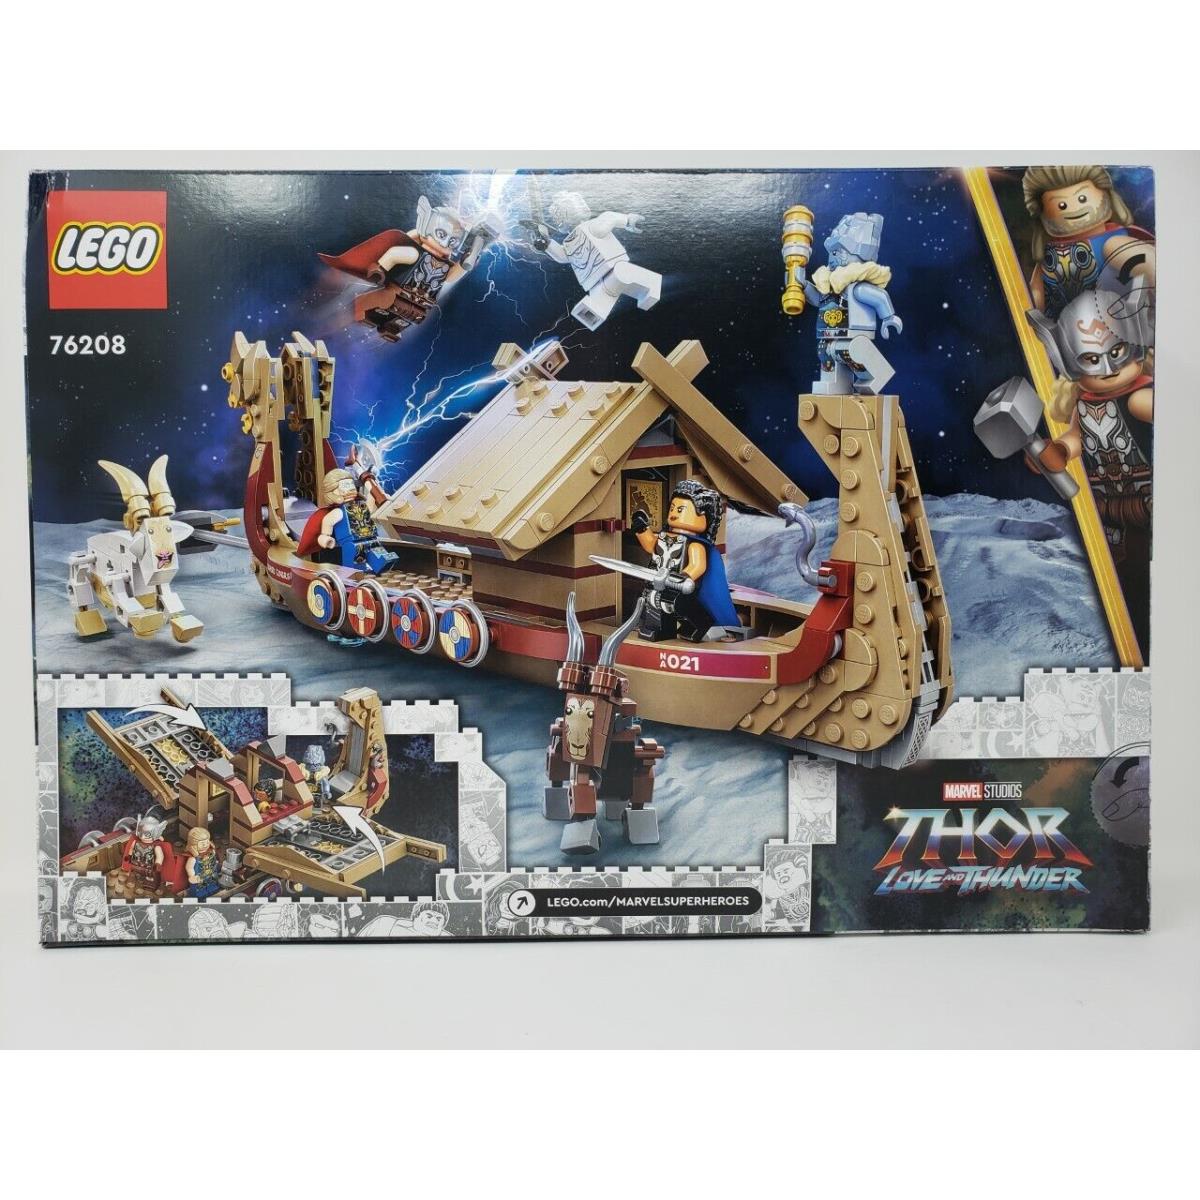 Lego Thor Love Thunder 76208 - Goat Boat